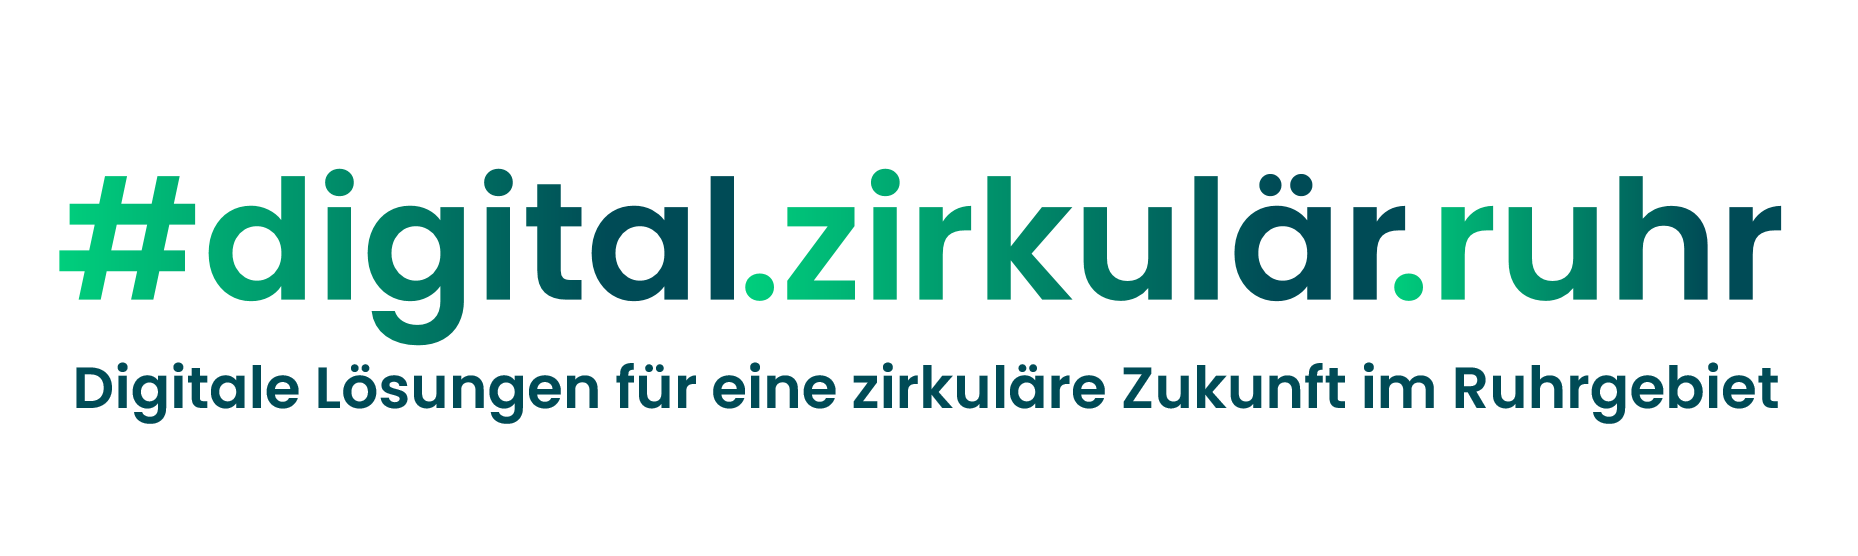 dzr logo schriftzug.png